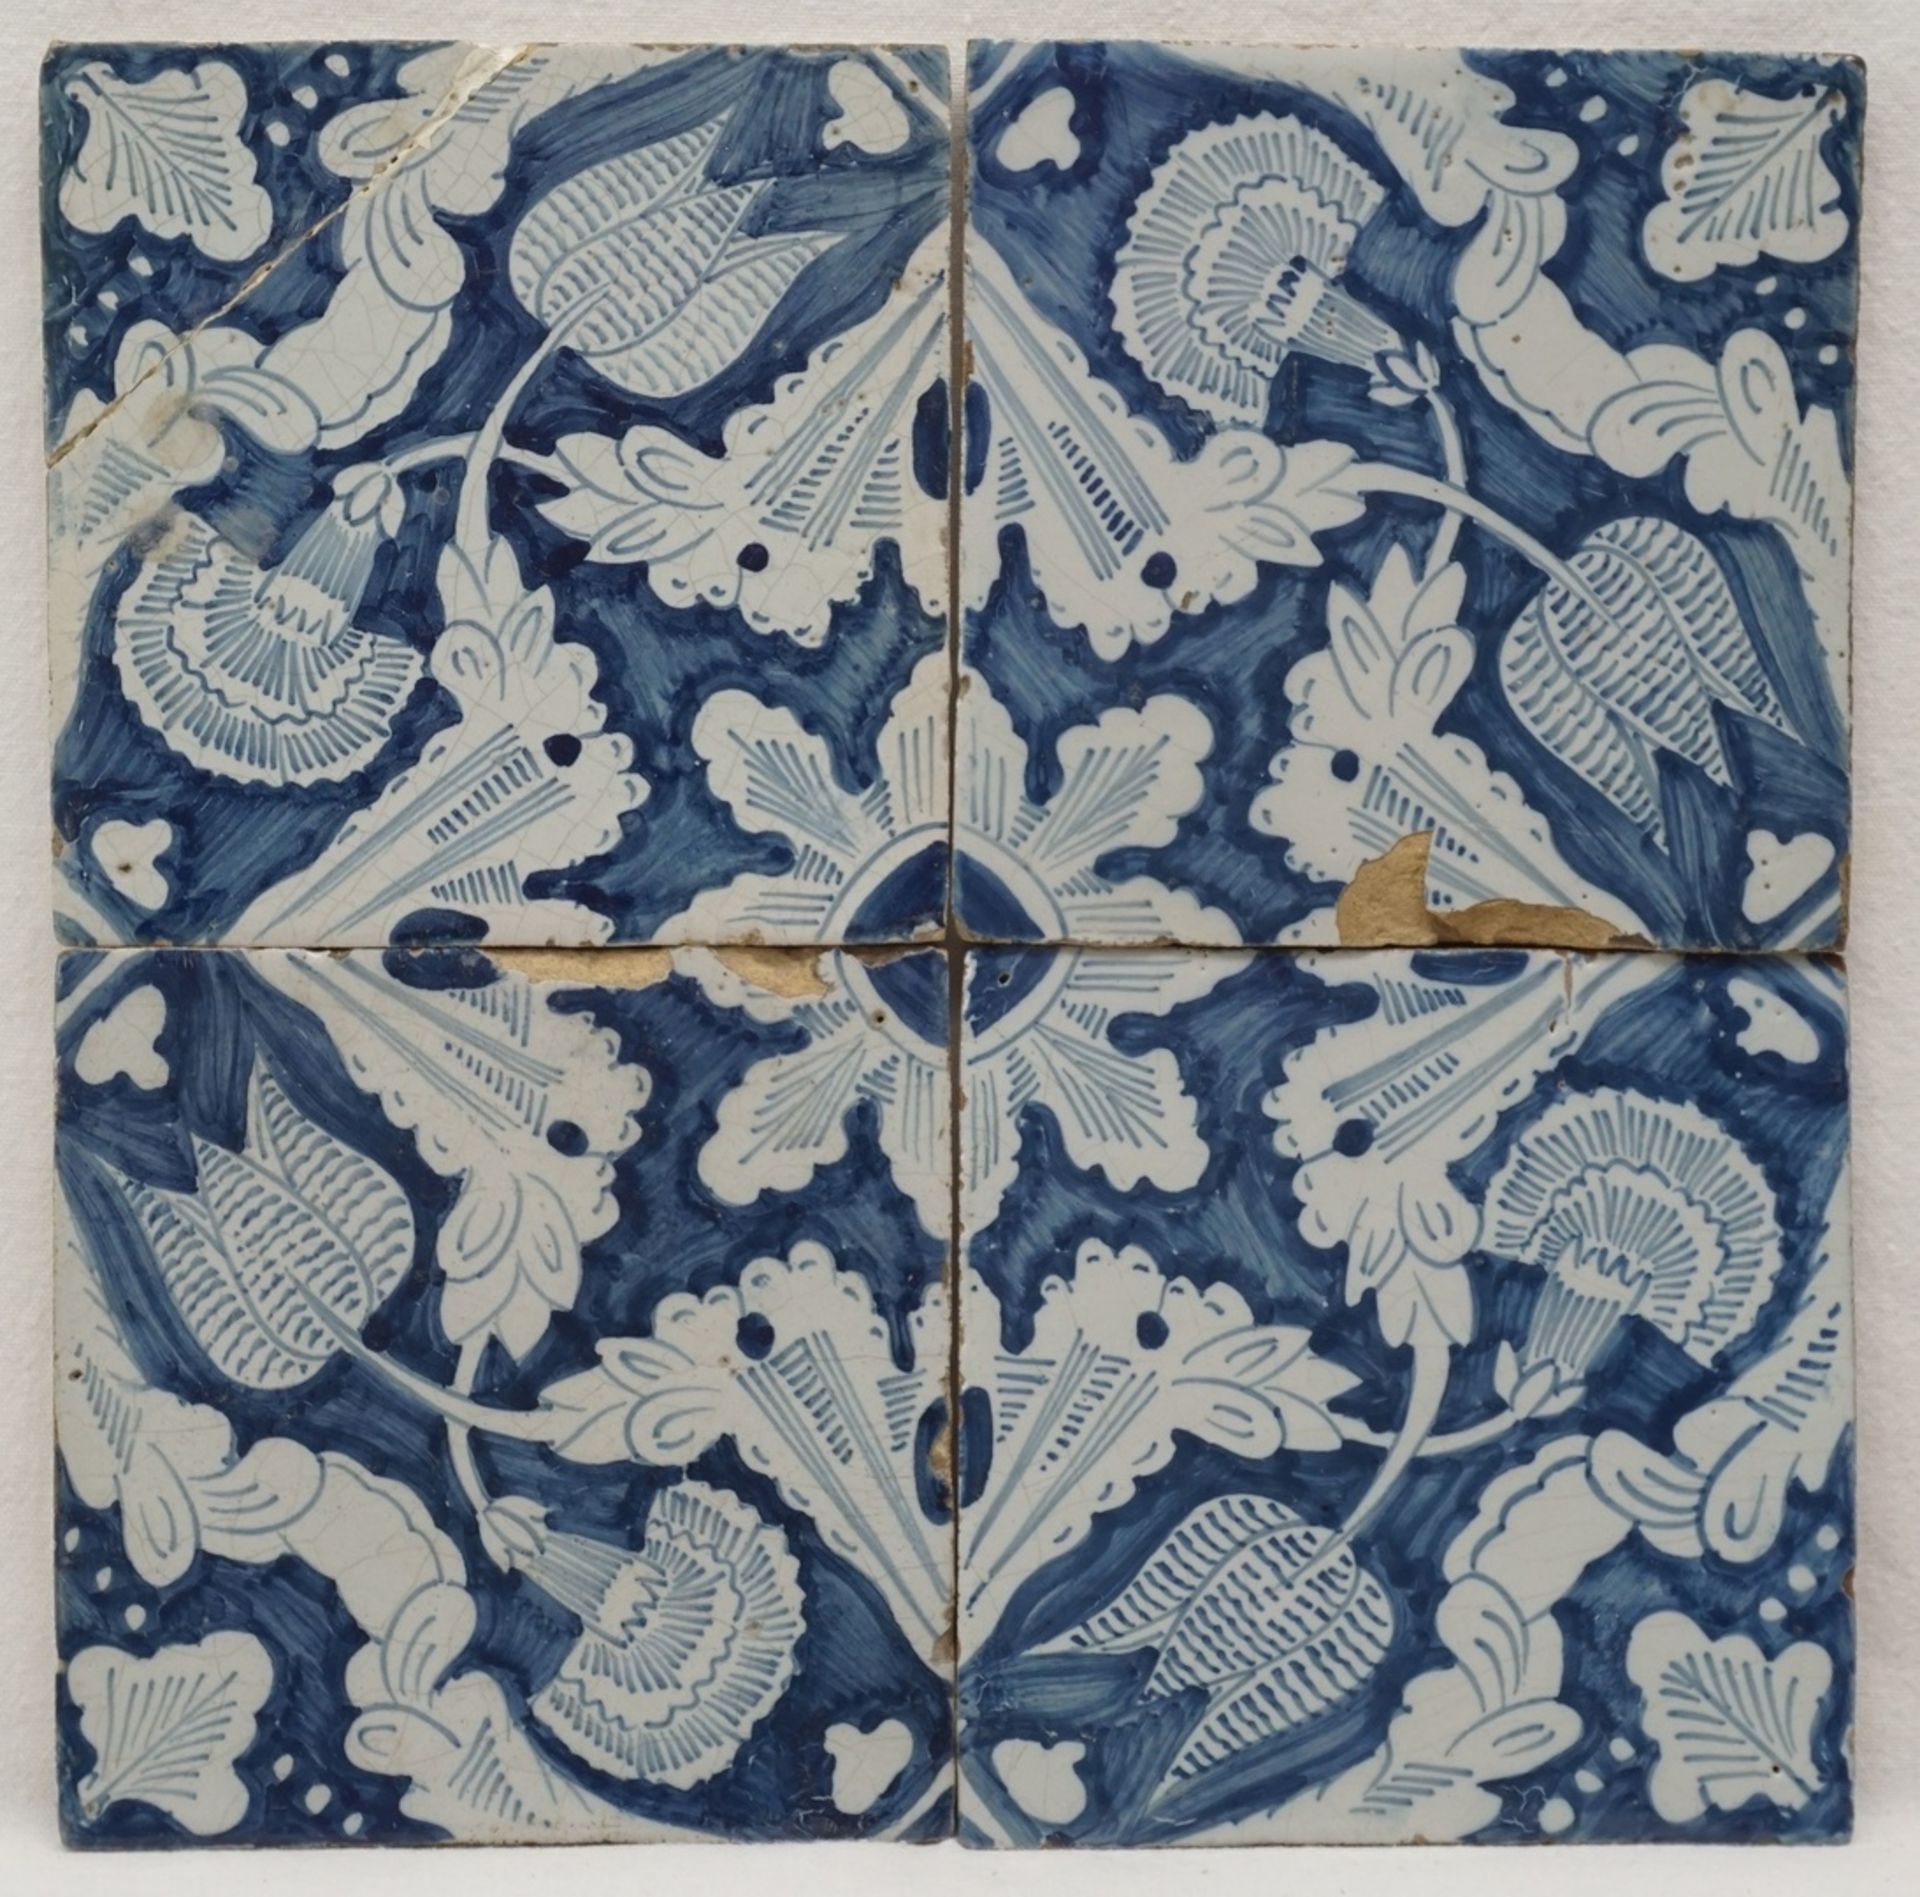 Vier Fliesen, Holland18. Jh., blau, Tulpen und Nelken, altersgemäßer Zustand, eine Fliese geklebt,